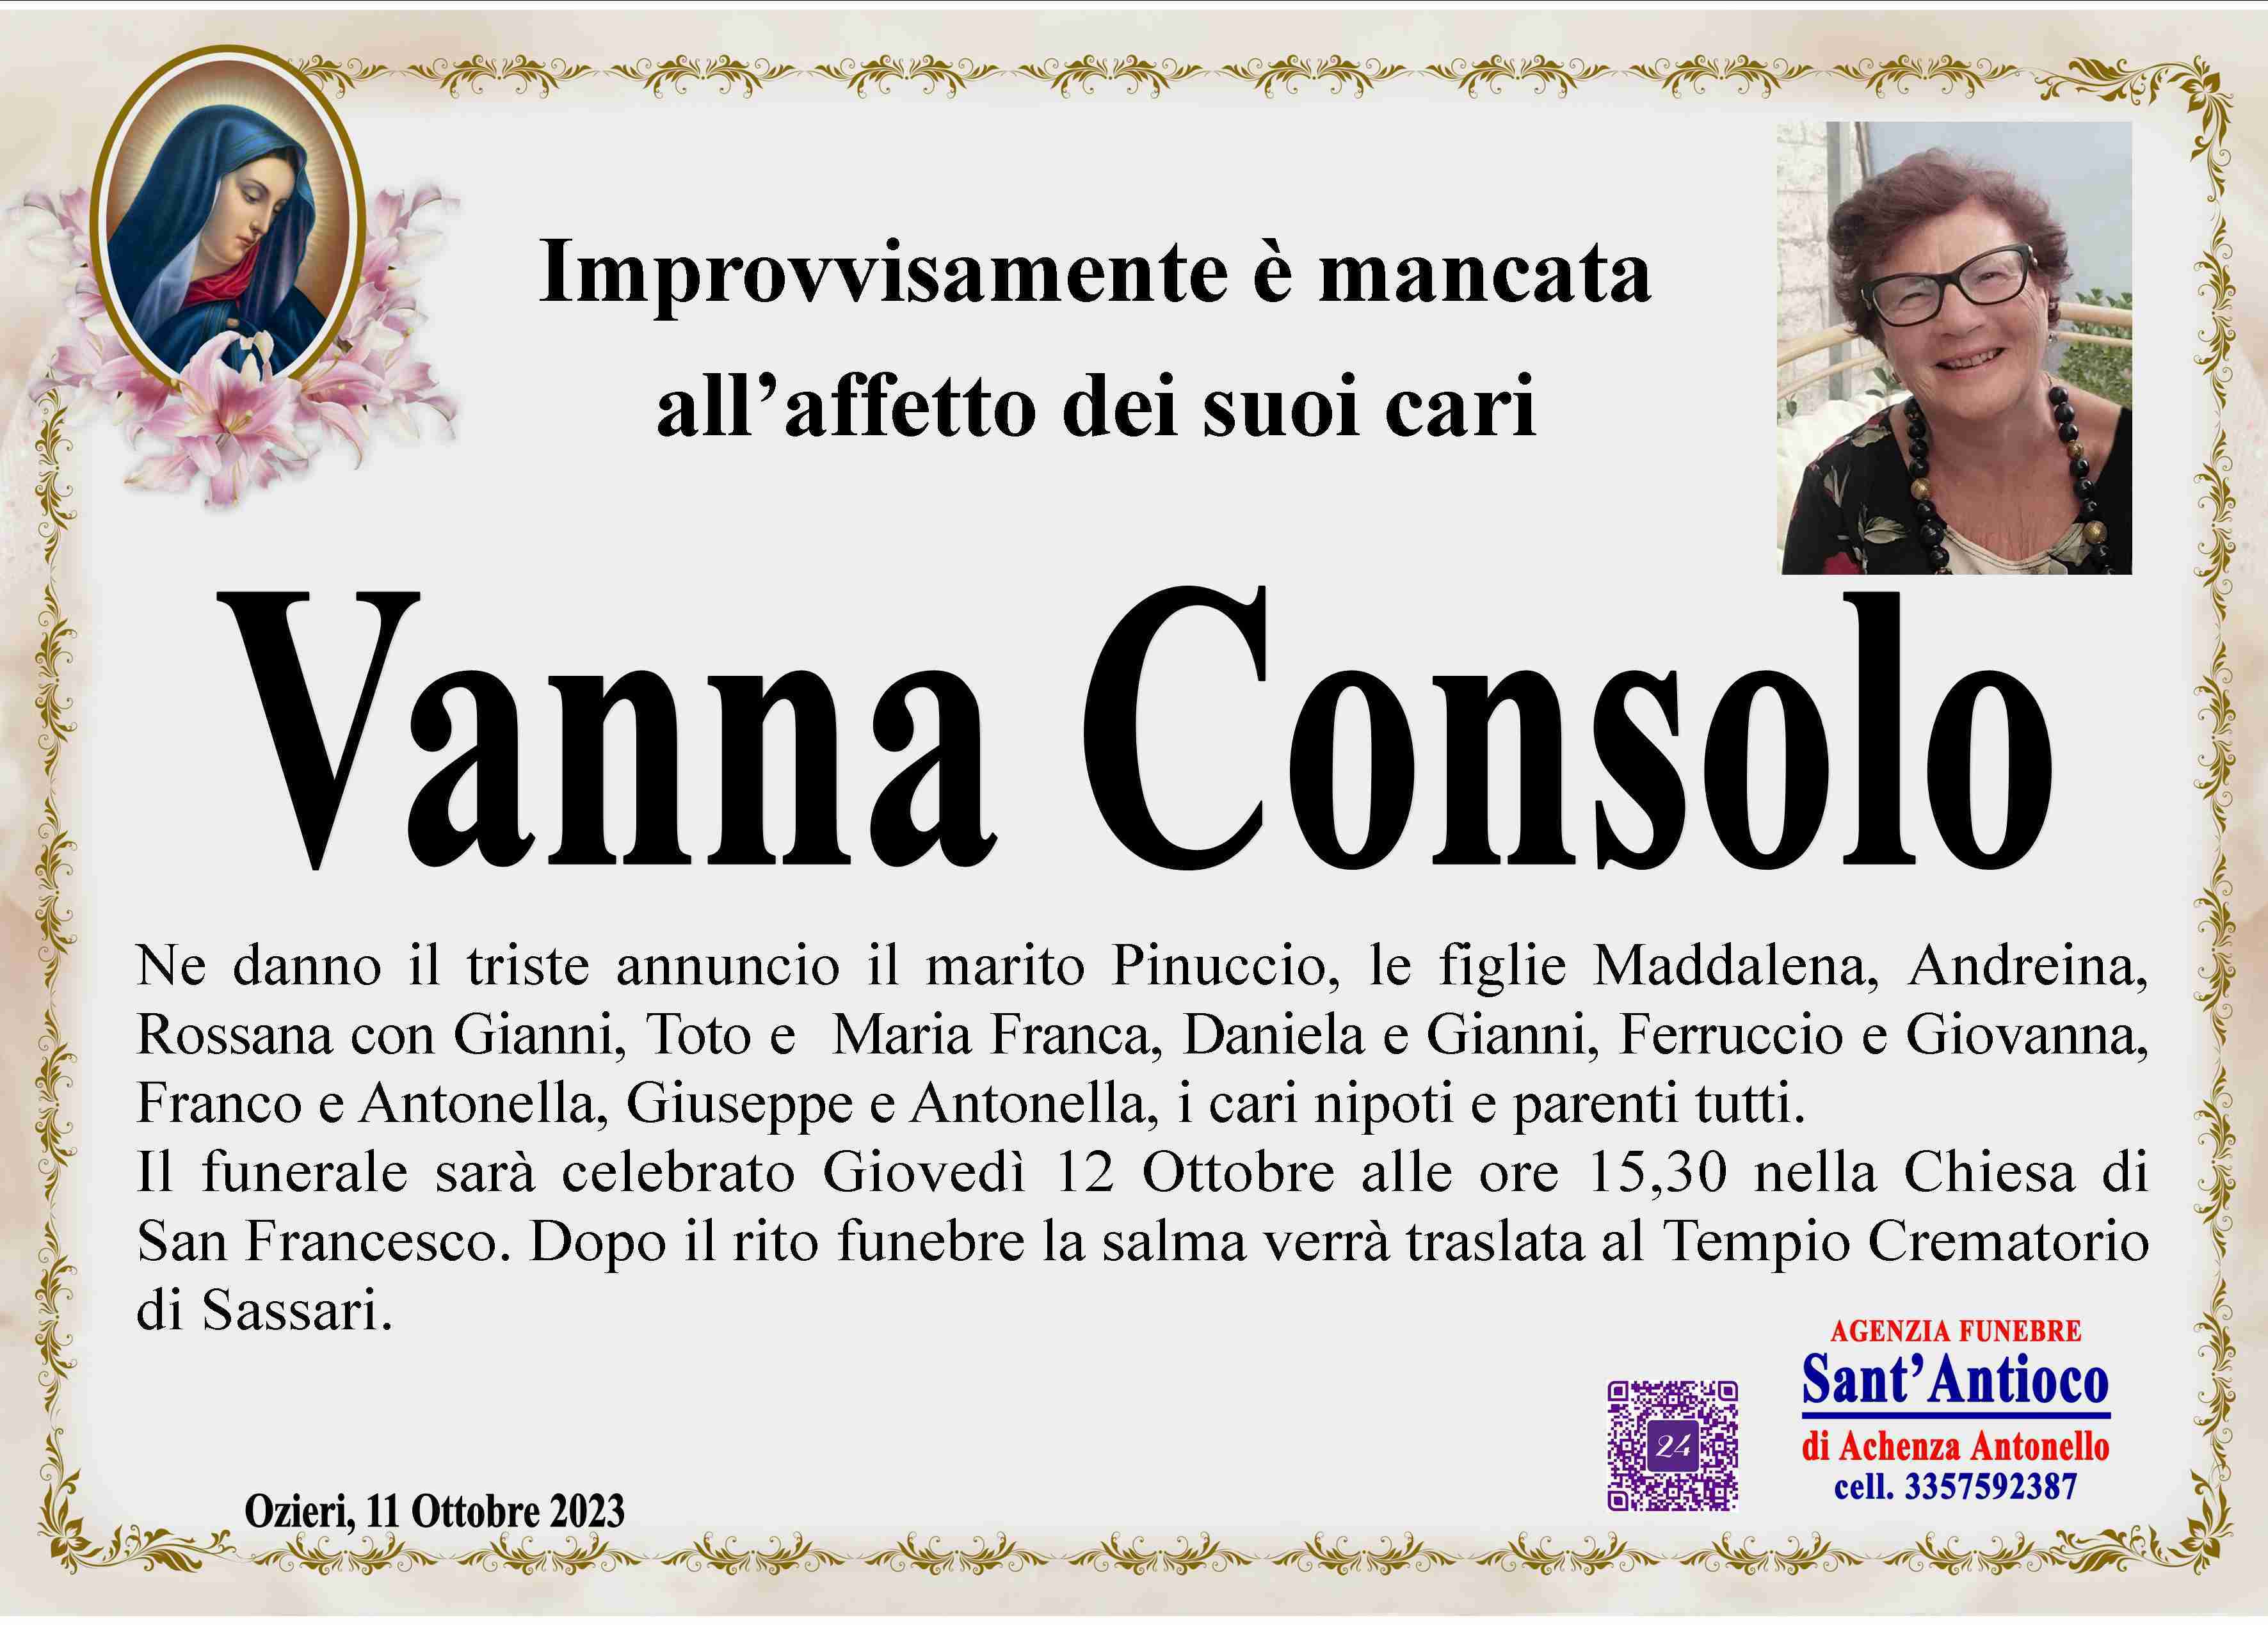 Vanna Consolo